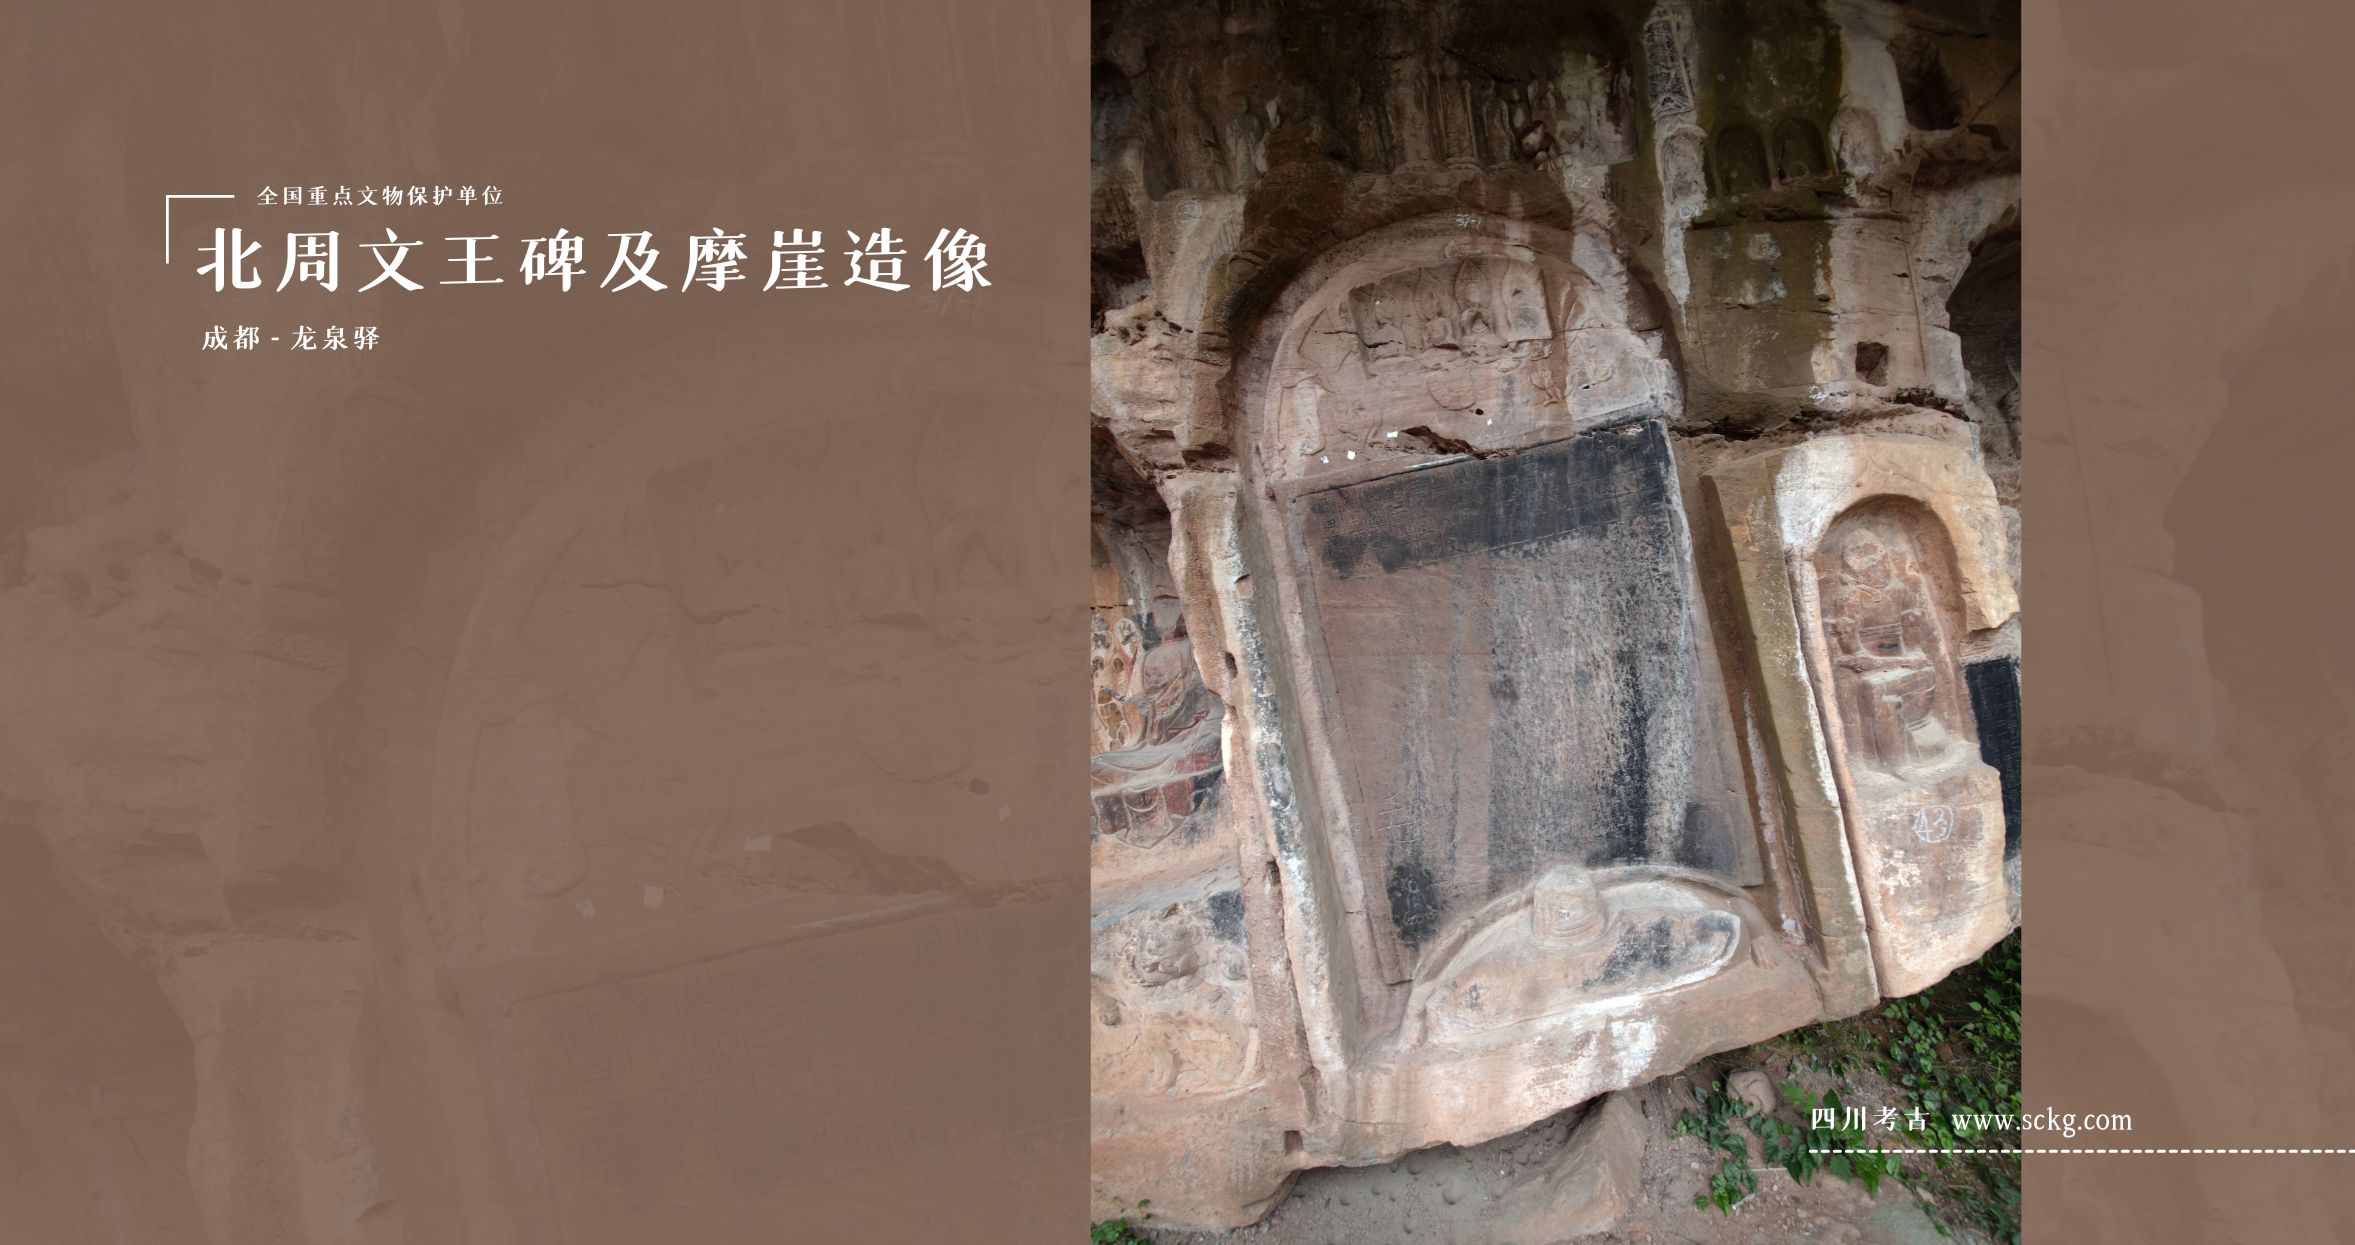 北周文王碑及摩崖造像-38号龛北周文王碑